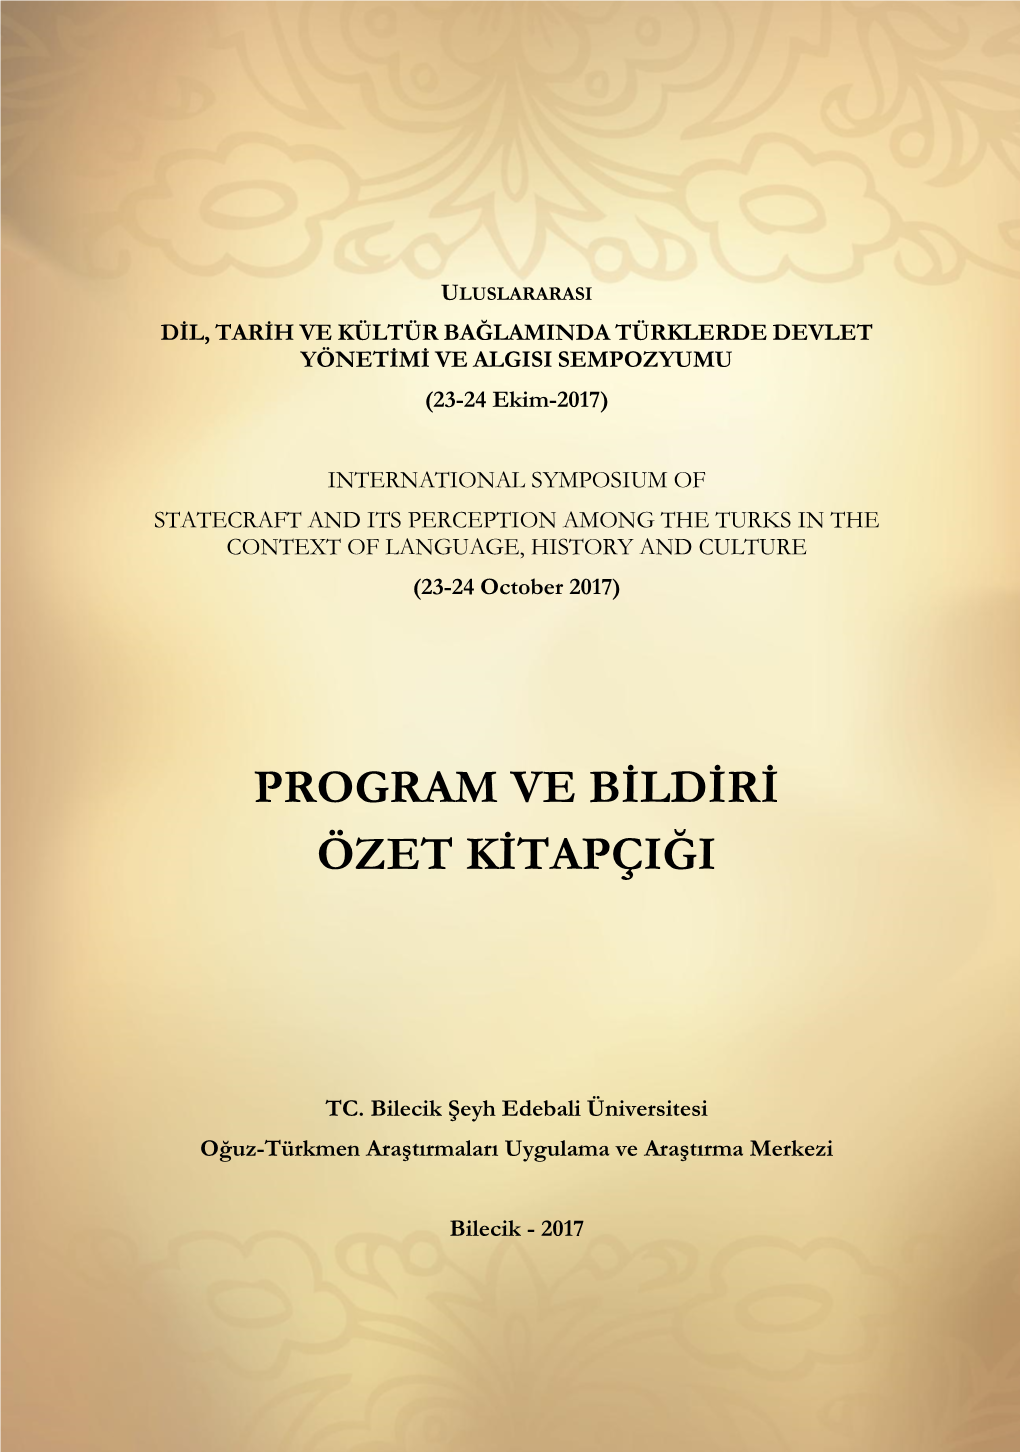 Program Ve Bġldġrġ Özet Kġtapçiği